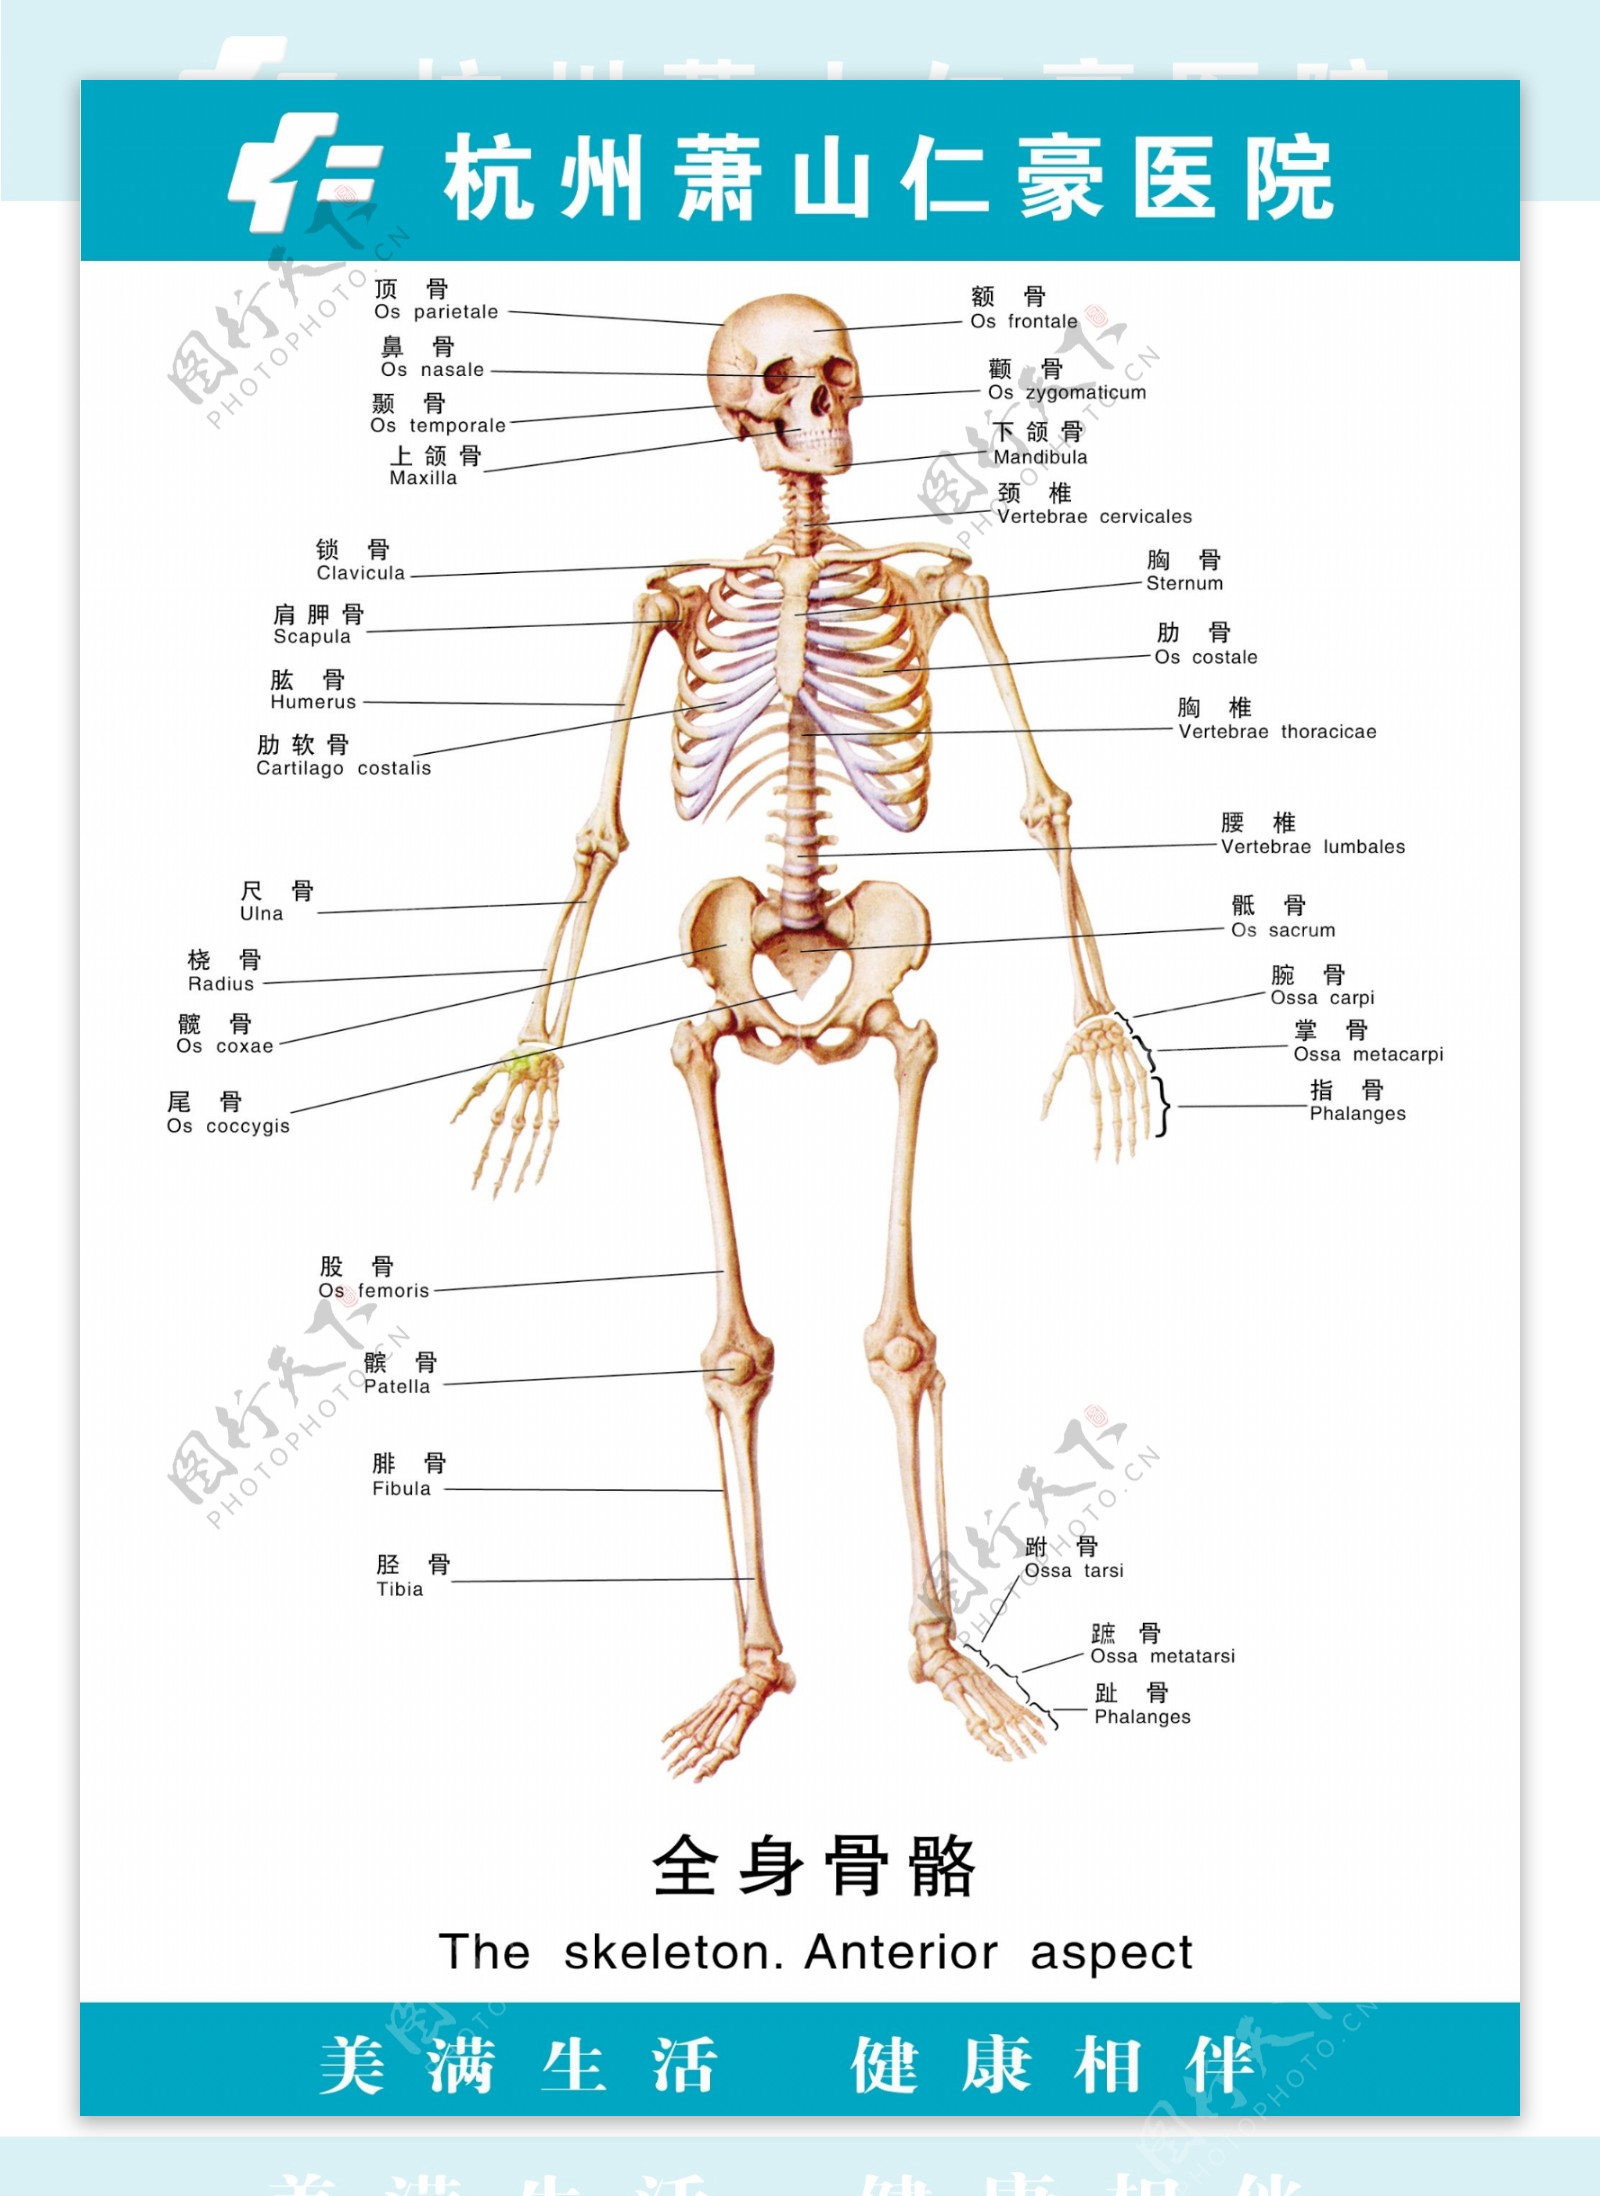 医疗人体科室挂图18全身骨骼